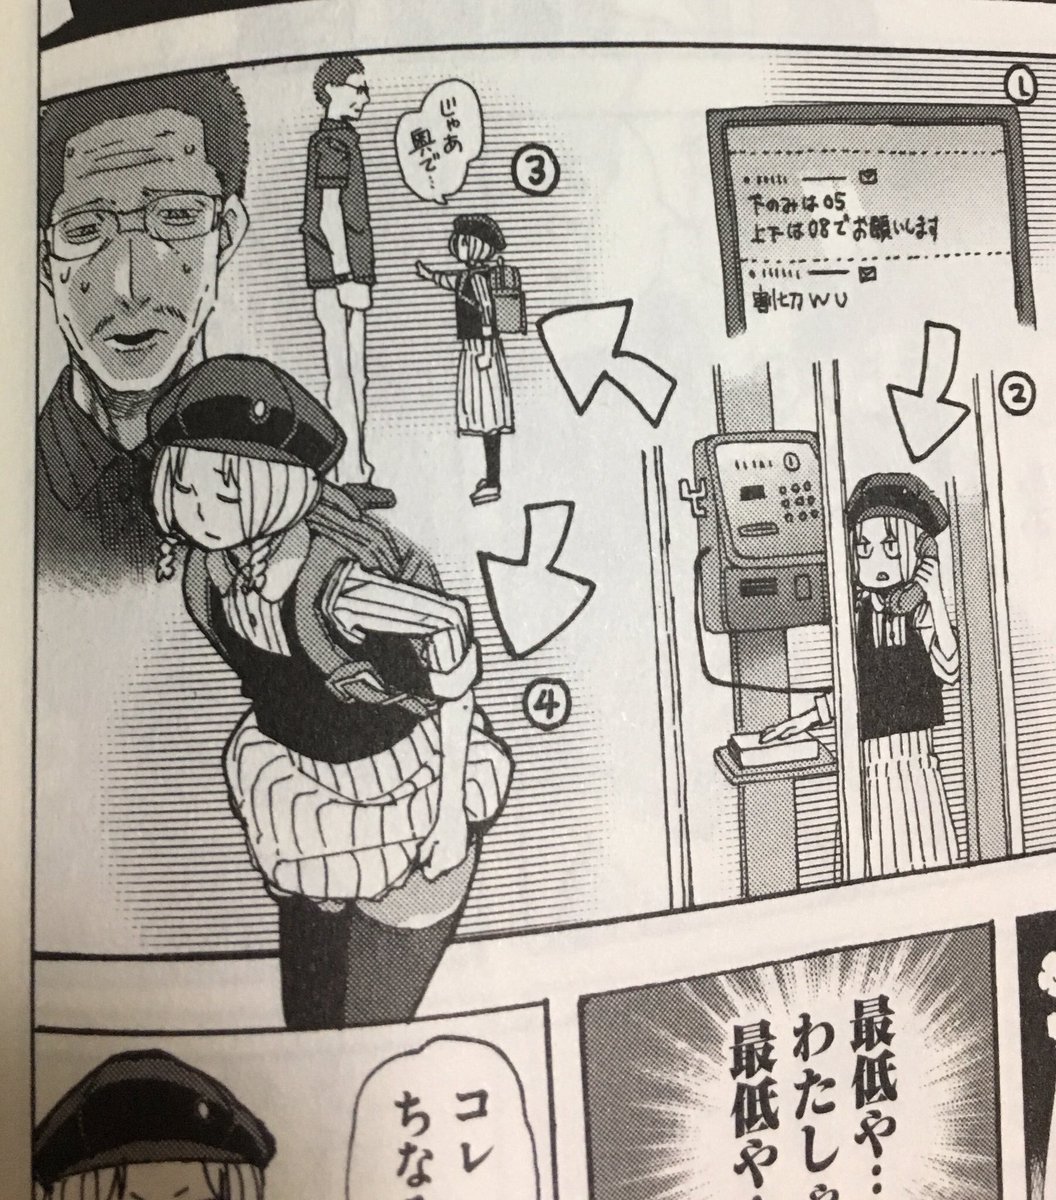 漫画内にモブとして出てるという理由でインタビューする人に抜擢されました。吉田輝和がどこに出てるか、ちおちゃんの通学路の漫画を買って探してみよう!
https://t.co/acOmMrFyGi 